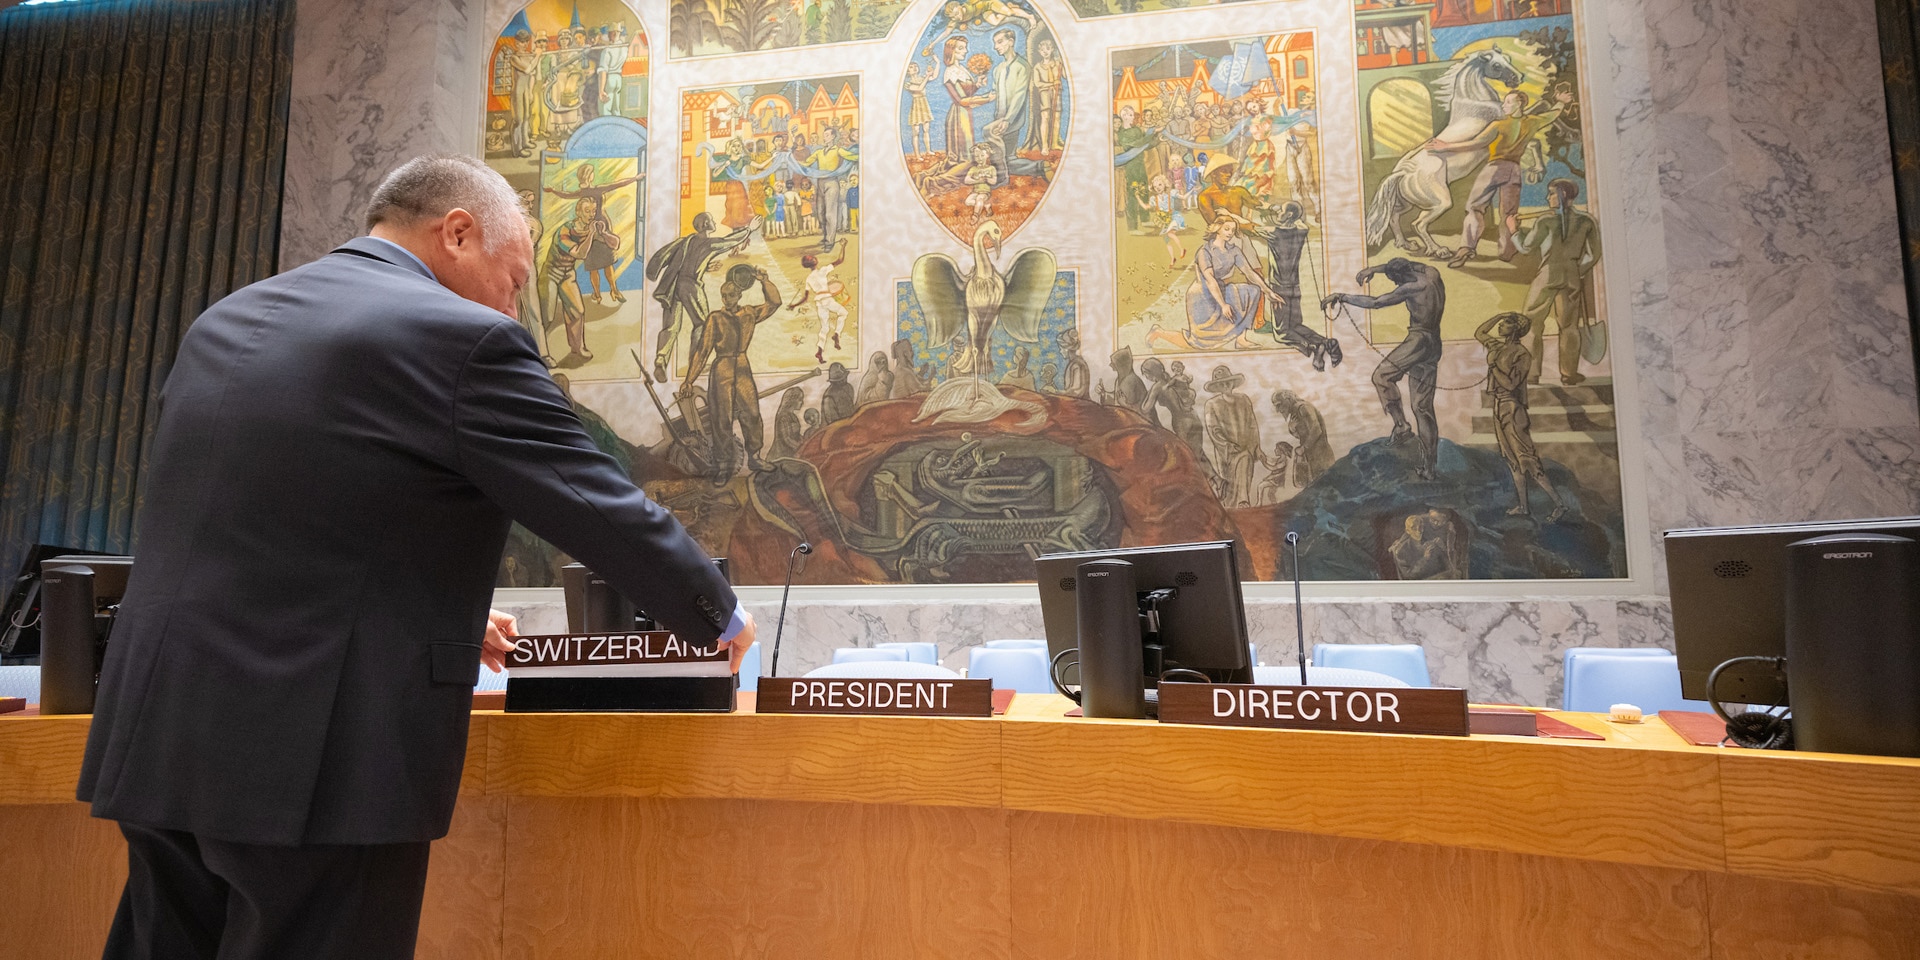  Ein Funktionär der UNO platziert ein Schild mit der Aufschrift «Switzerland» am Platz des Ratsvorsitzes am hufeisenförmigen Tisch des UNO-Sicherheitsrats.